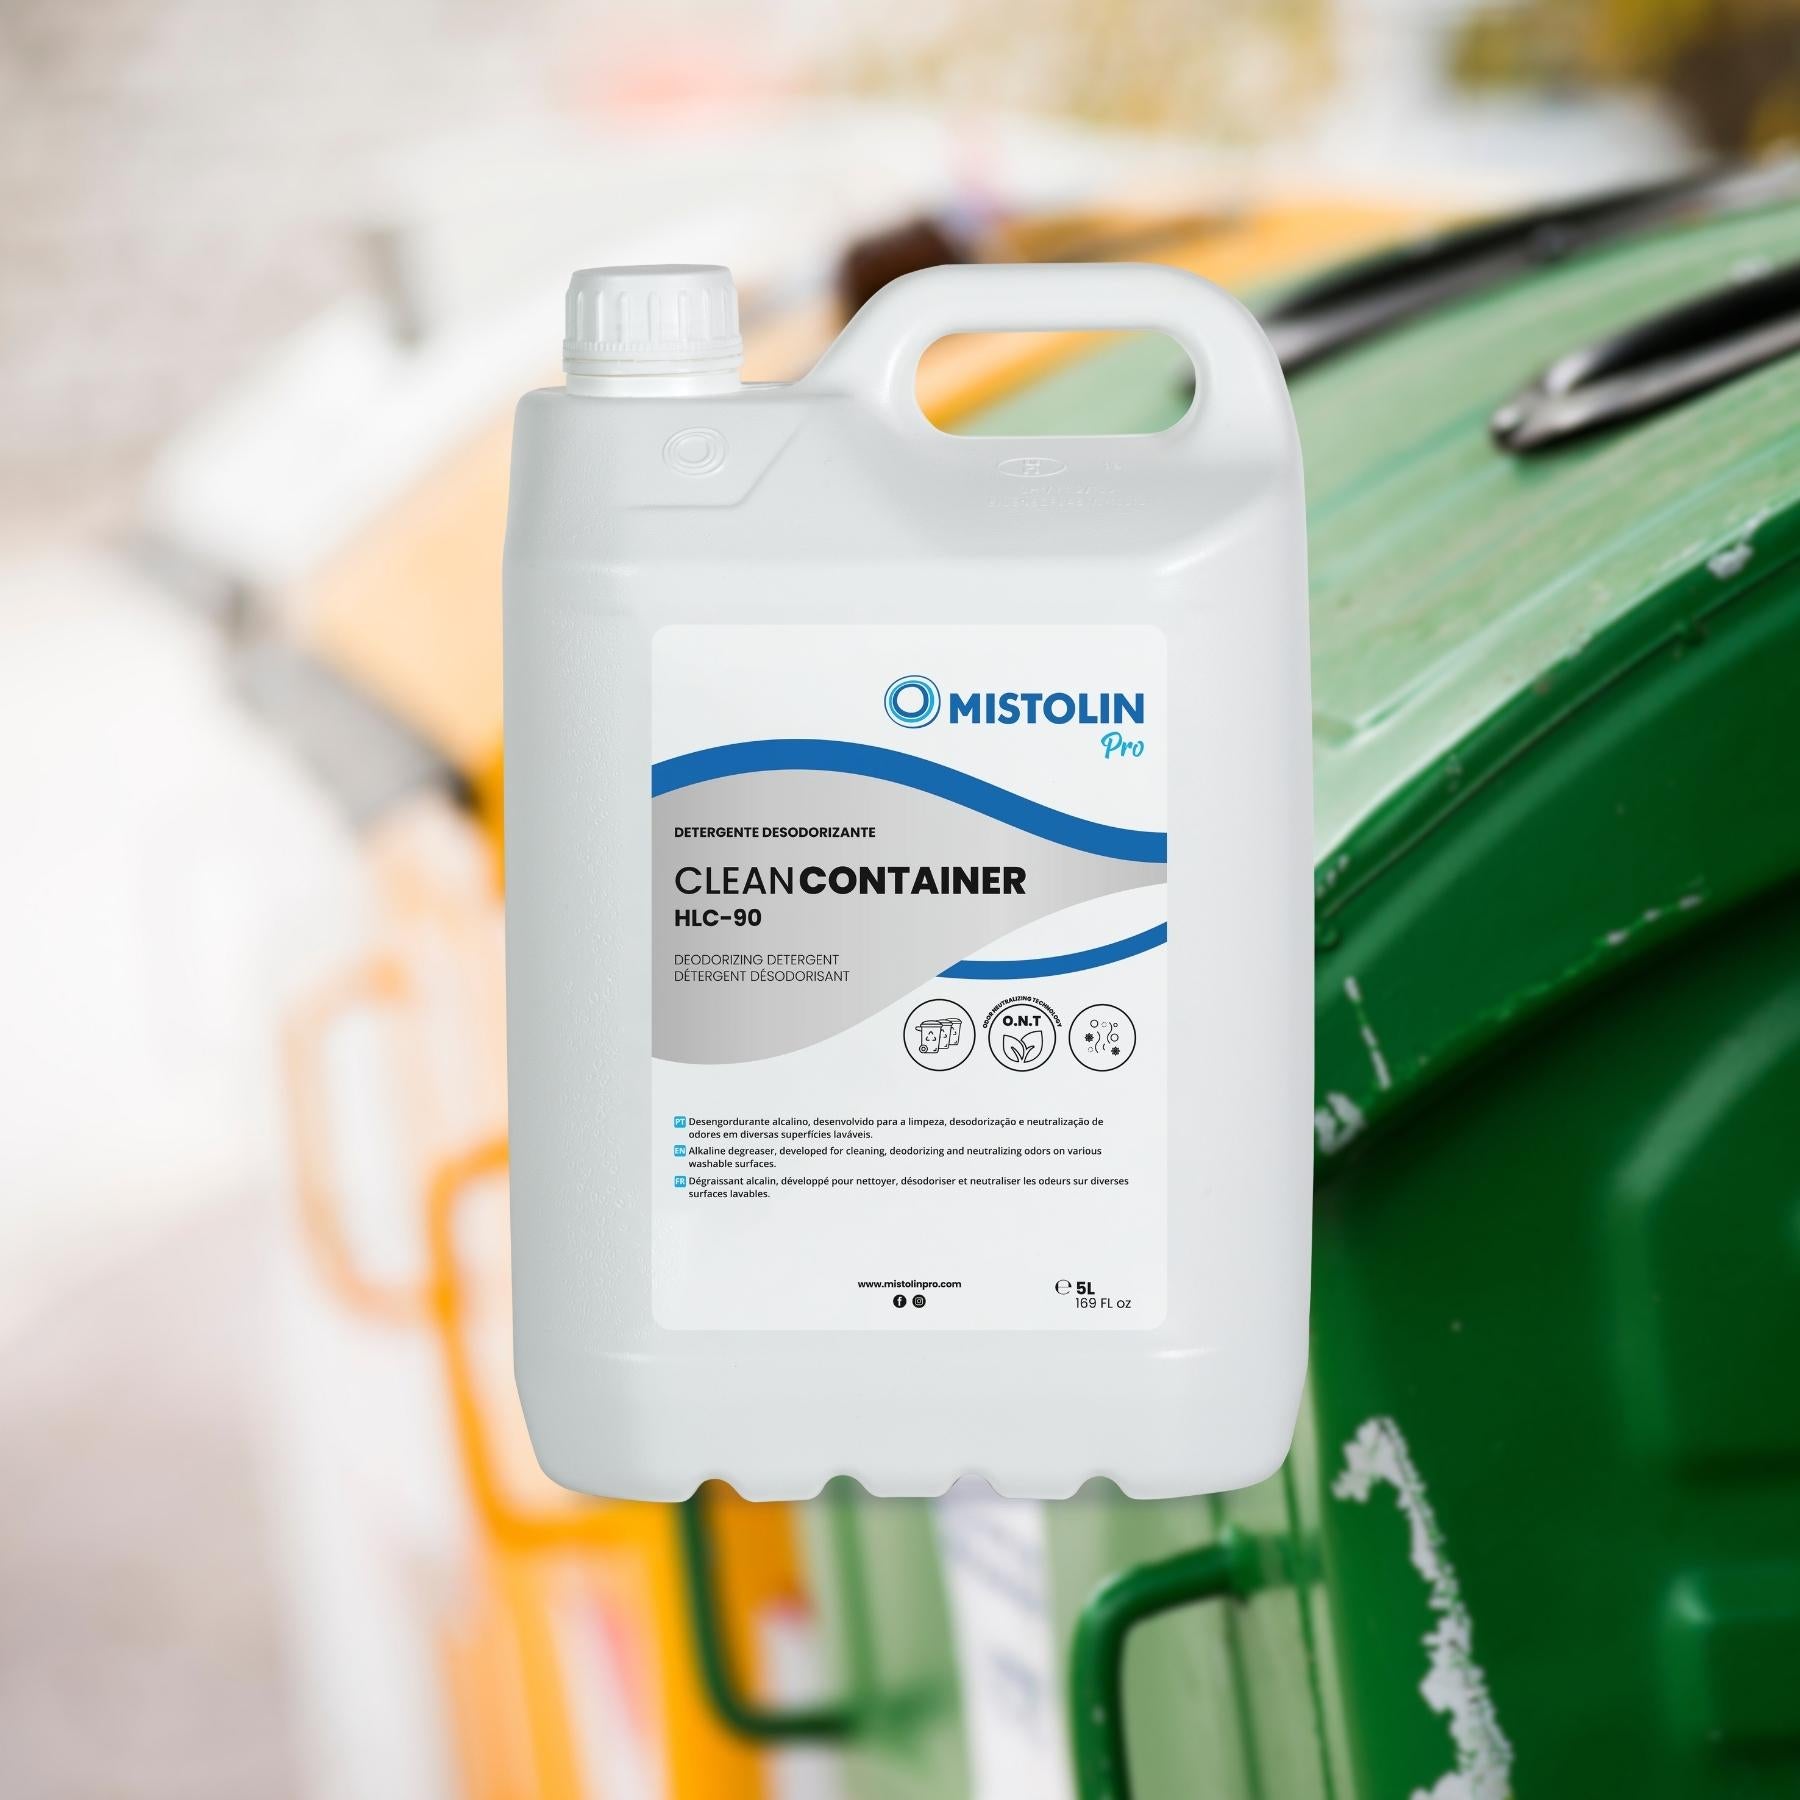 CLEAN CONTAINER HLC-90 DETERGENTE DESODORIZANTE 5L é um detergente alcalino, desenvolvido para a limpeza, desodorização e neutralização de odores em diversas superfícies laváveis.